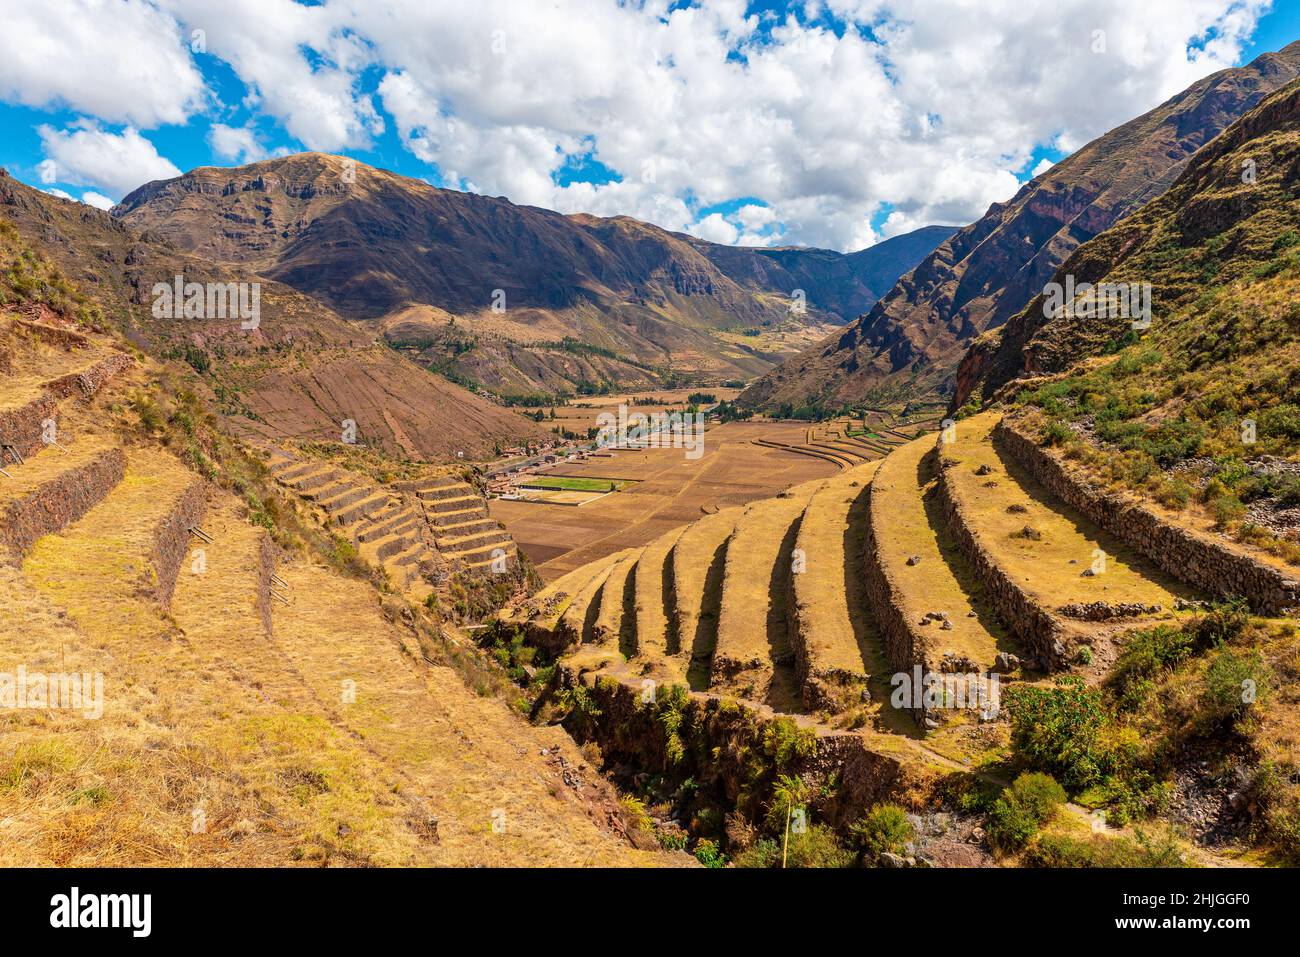 Terrasses d'agriculture dans la ruine inca de Pisac avec vue sur les montagnes des Andes et la Vallée Sacrée, province de Cusco, Pérou. Banque D'Images